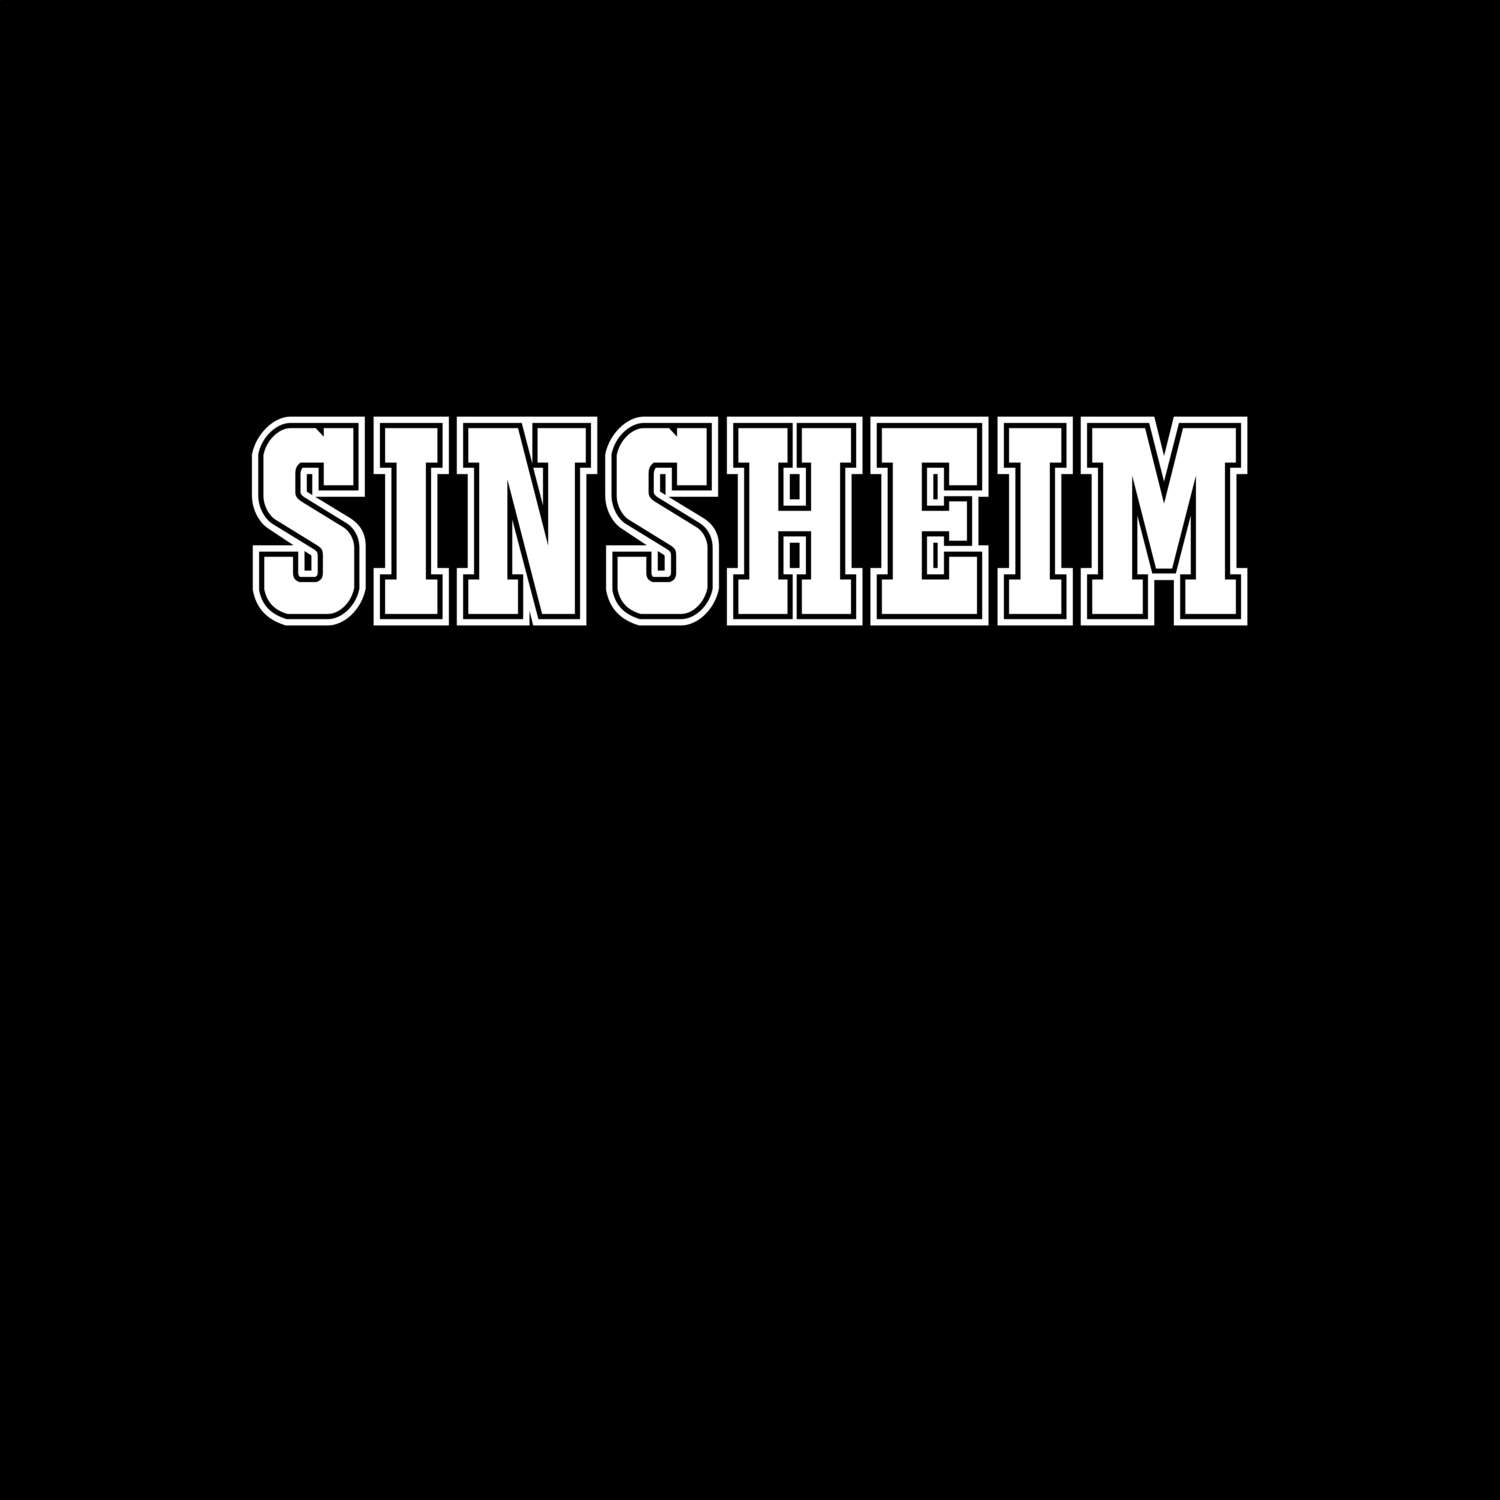 Sinsheim T-Shirt »Classic«